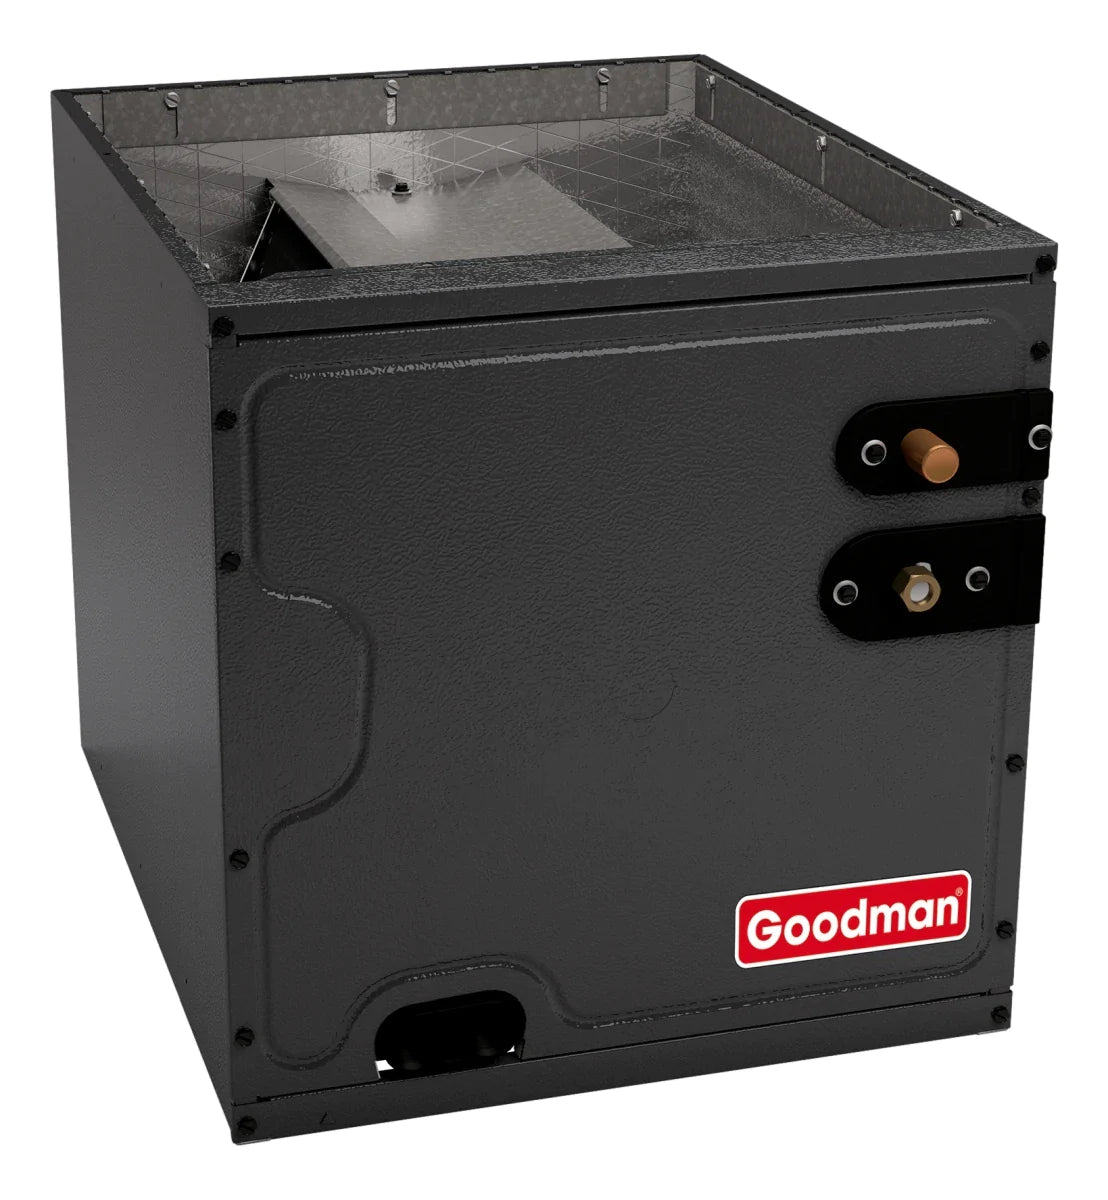 Goodman 2.5 TON 15.2 SEER2 Upflow AC system with 80% AFUE 80k BTU 2 stage Low NOx Furnace (GSXH503010, CAPFA4226B6, GMVC800803BX)